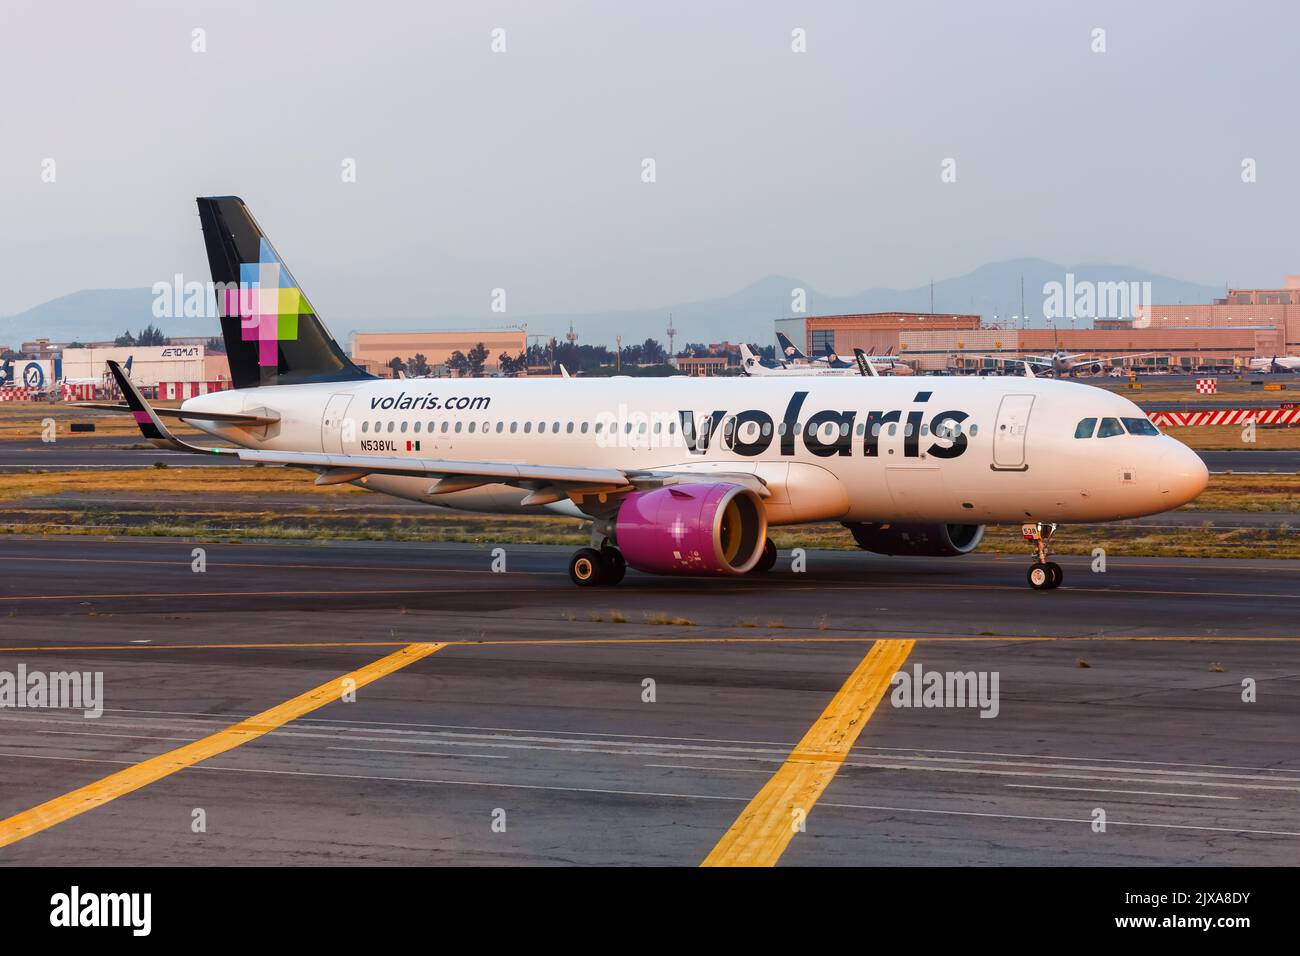 Ciudad de México, México - 15 de abril de 2022: Avión Volaris Airbus A320neo en el aeropuerto de la Ciudad de México (MEX) en México. Foto de stock